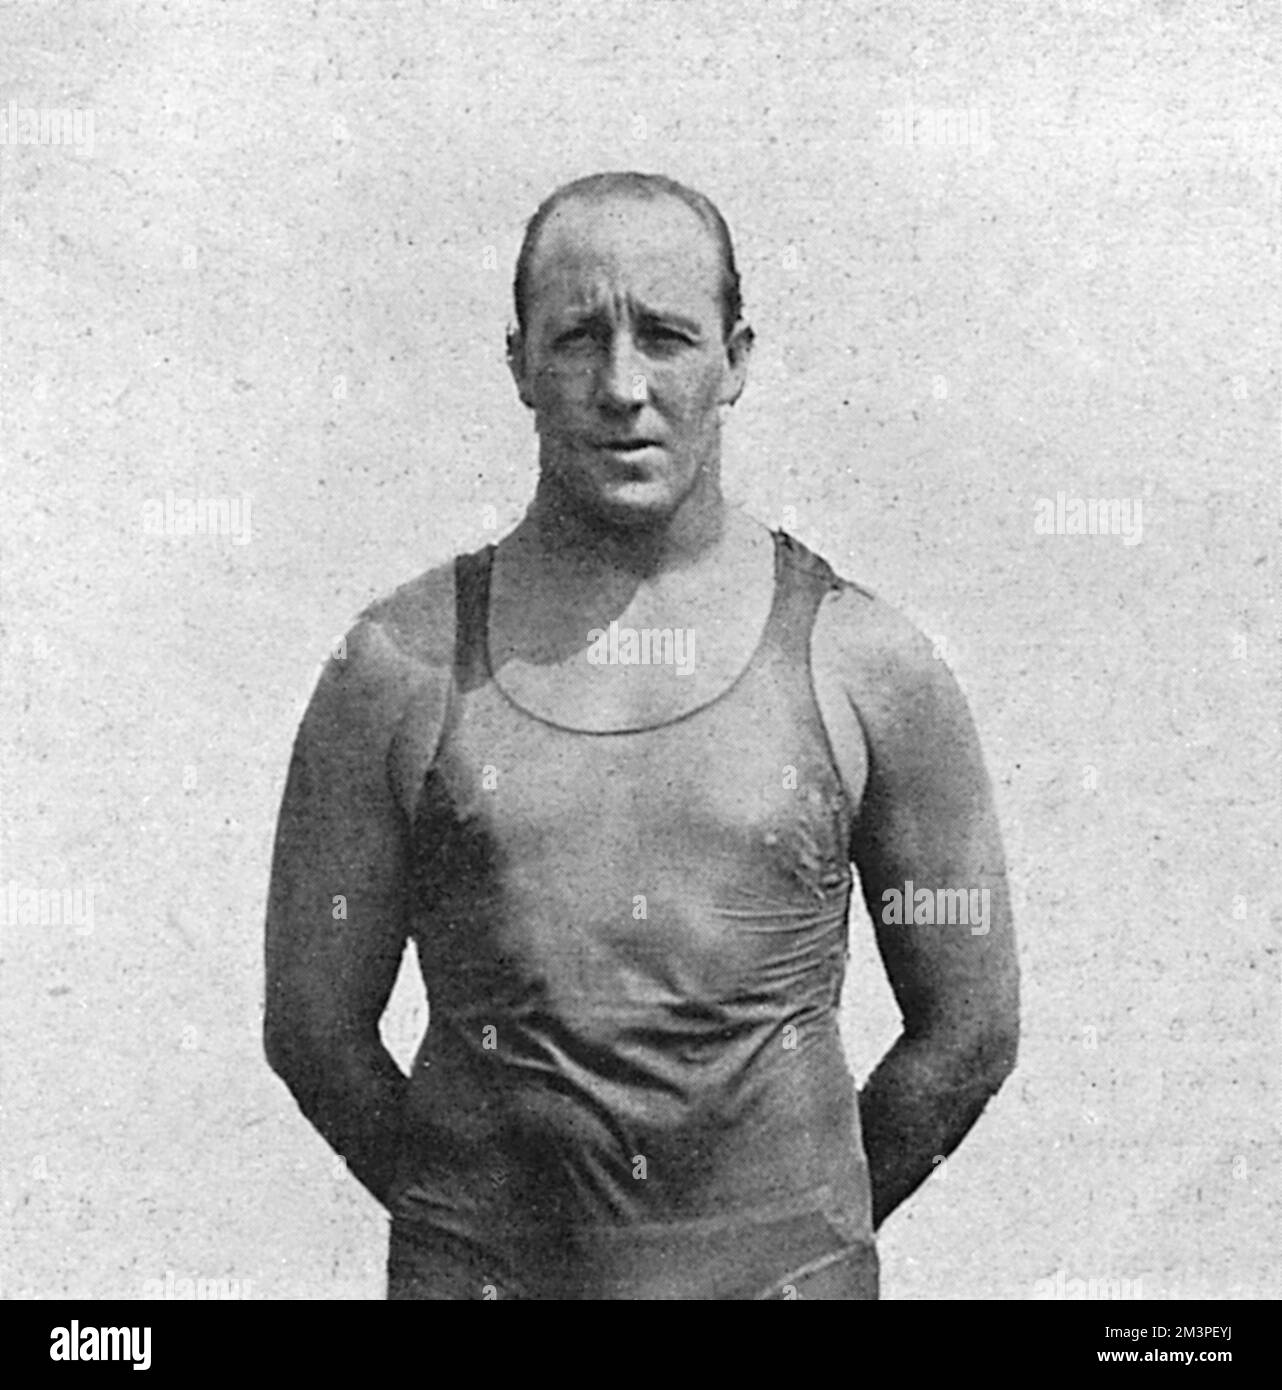 Cecil Patrick Healy (28 novembre 1881 29 agosto 1918) nuotatore australiano freestyle degli anni '1900s e '1910s, che ha vinto l'argento nei 100 m freestyle alle Olimpiadi estive del 1912 a Stoccolma. Ha anche vinto l'oro nel relay freestyle 4 &#x5e0;200 m. Fu ucciso nella prima guerra mondiale nella Somme durante un attacco ad una trincea tedesca. 1918 Foto Stock